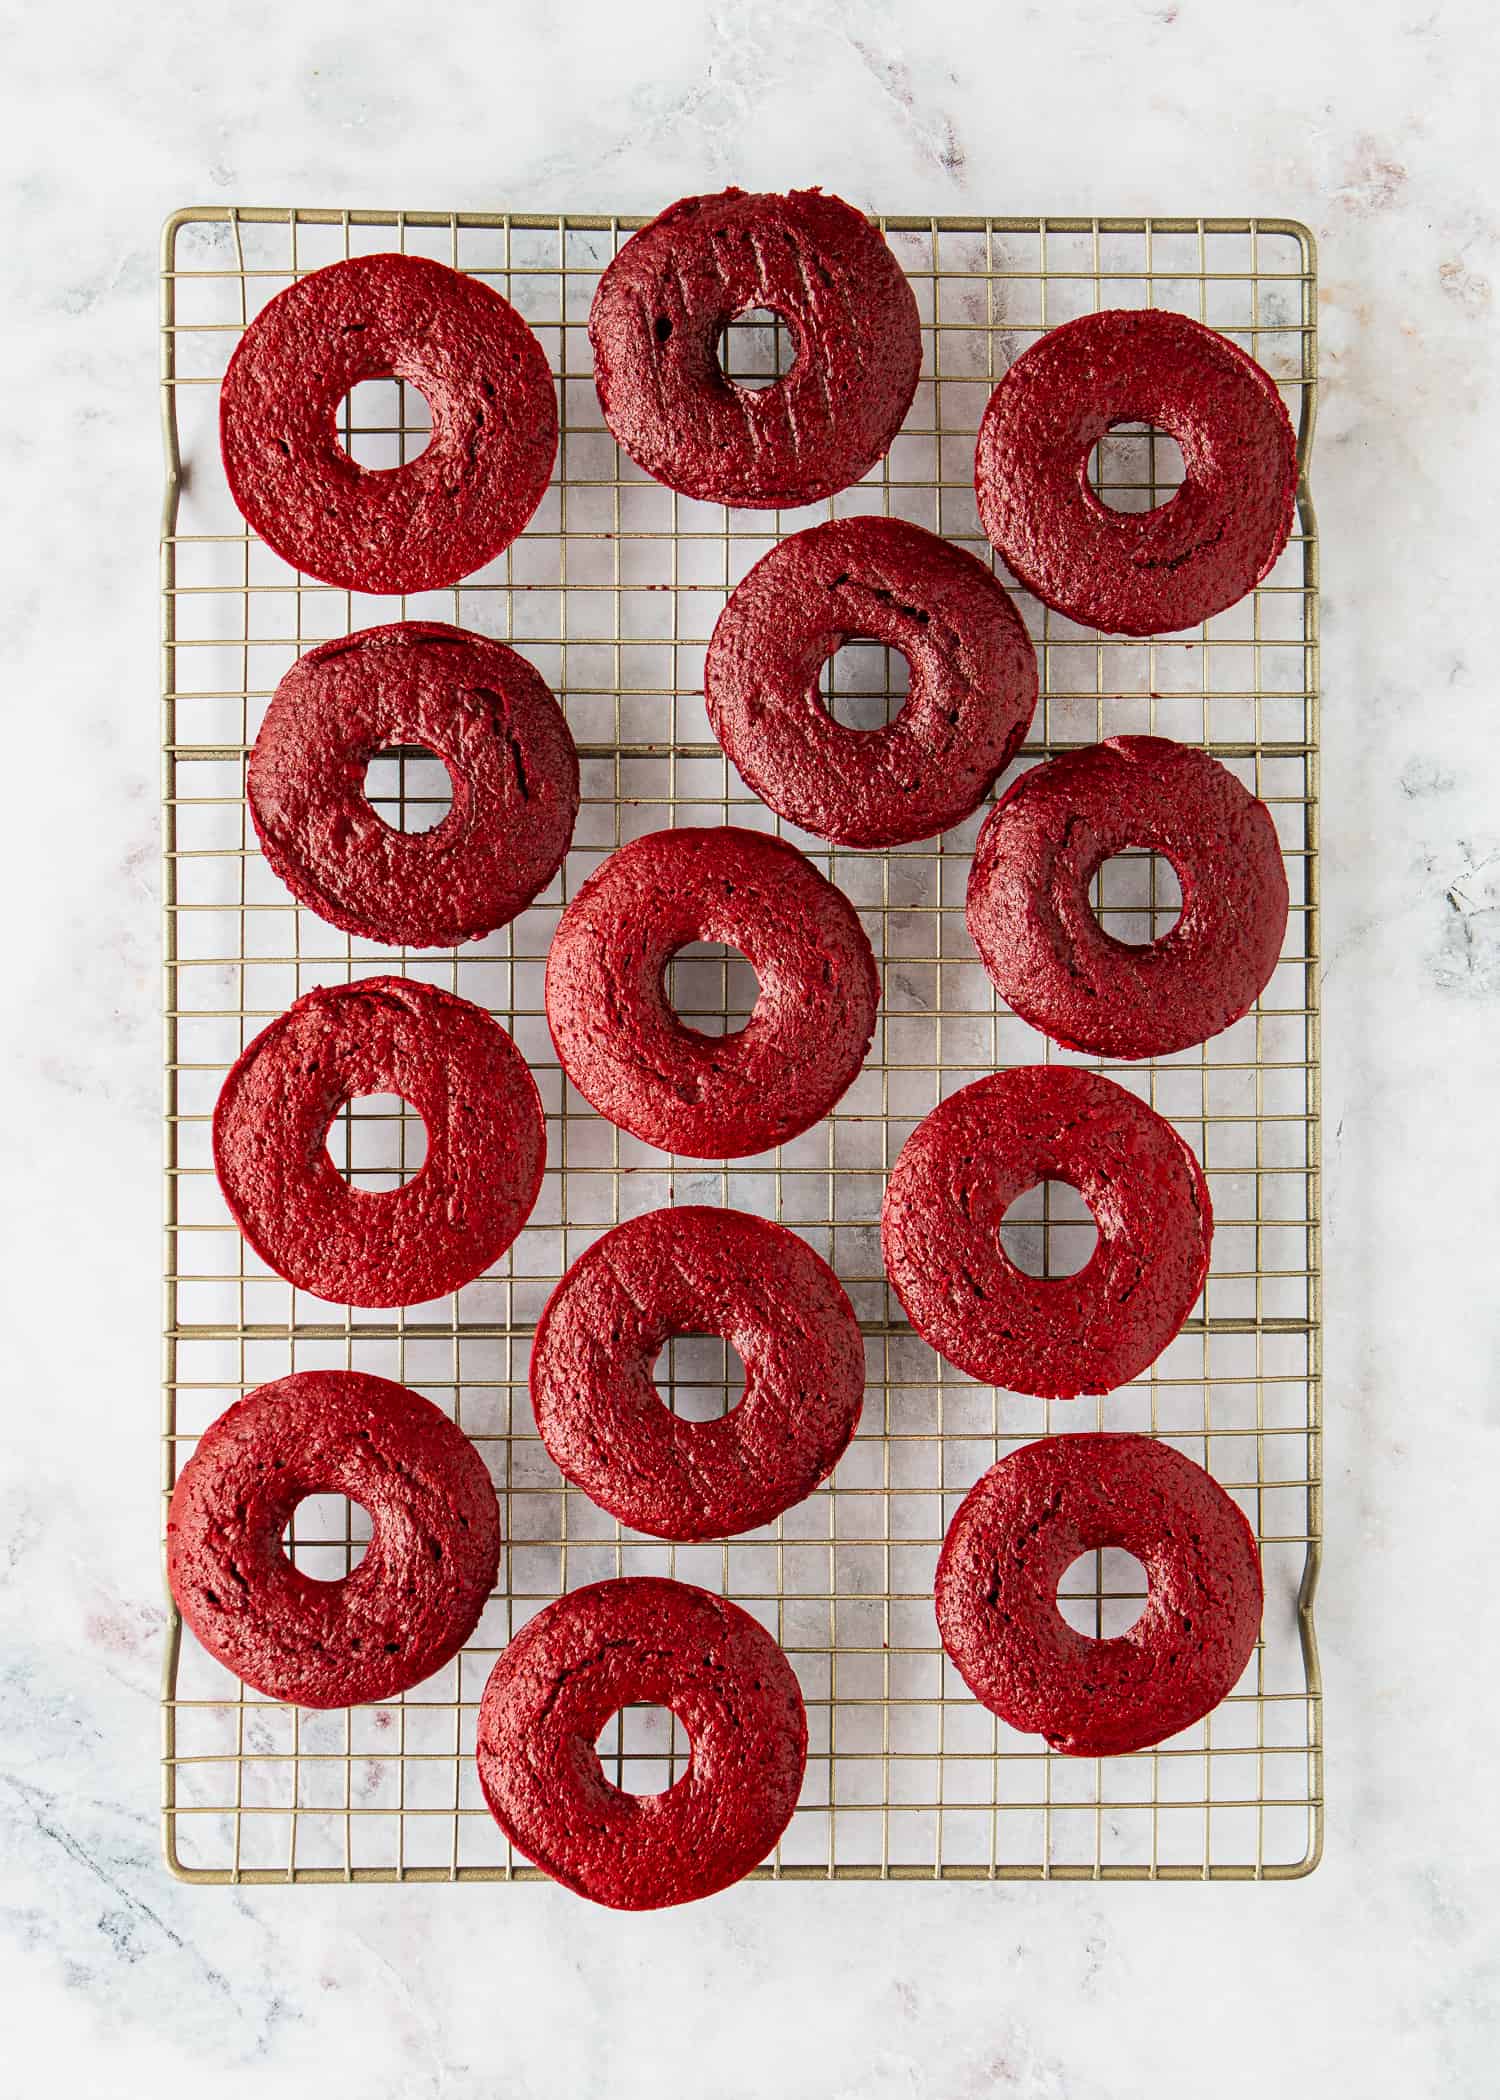 How to Make Easy Eggless Red Velvet Donuts step 9